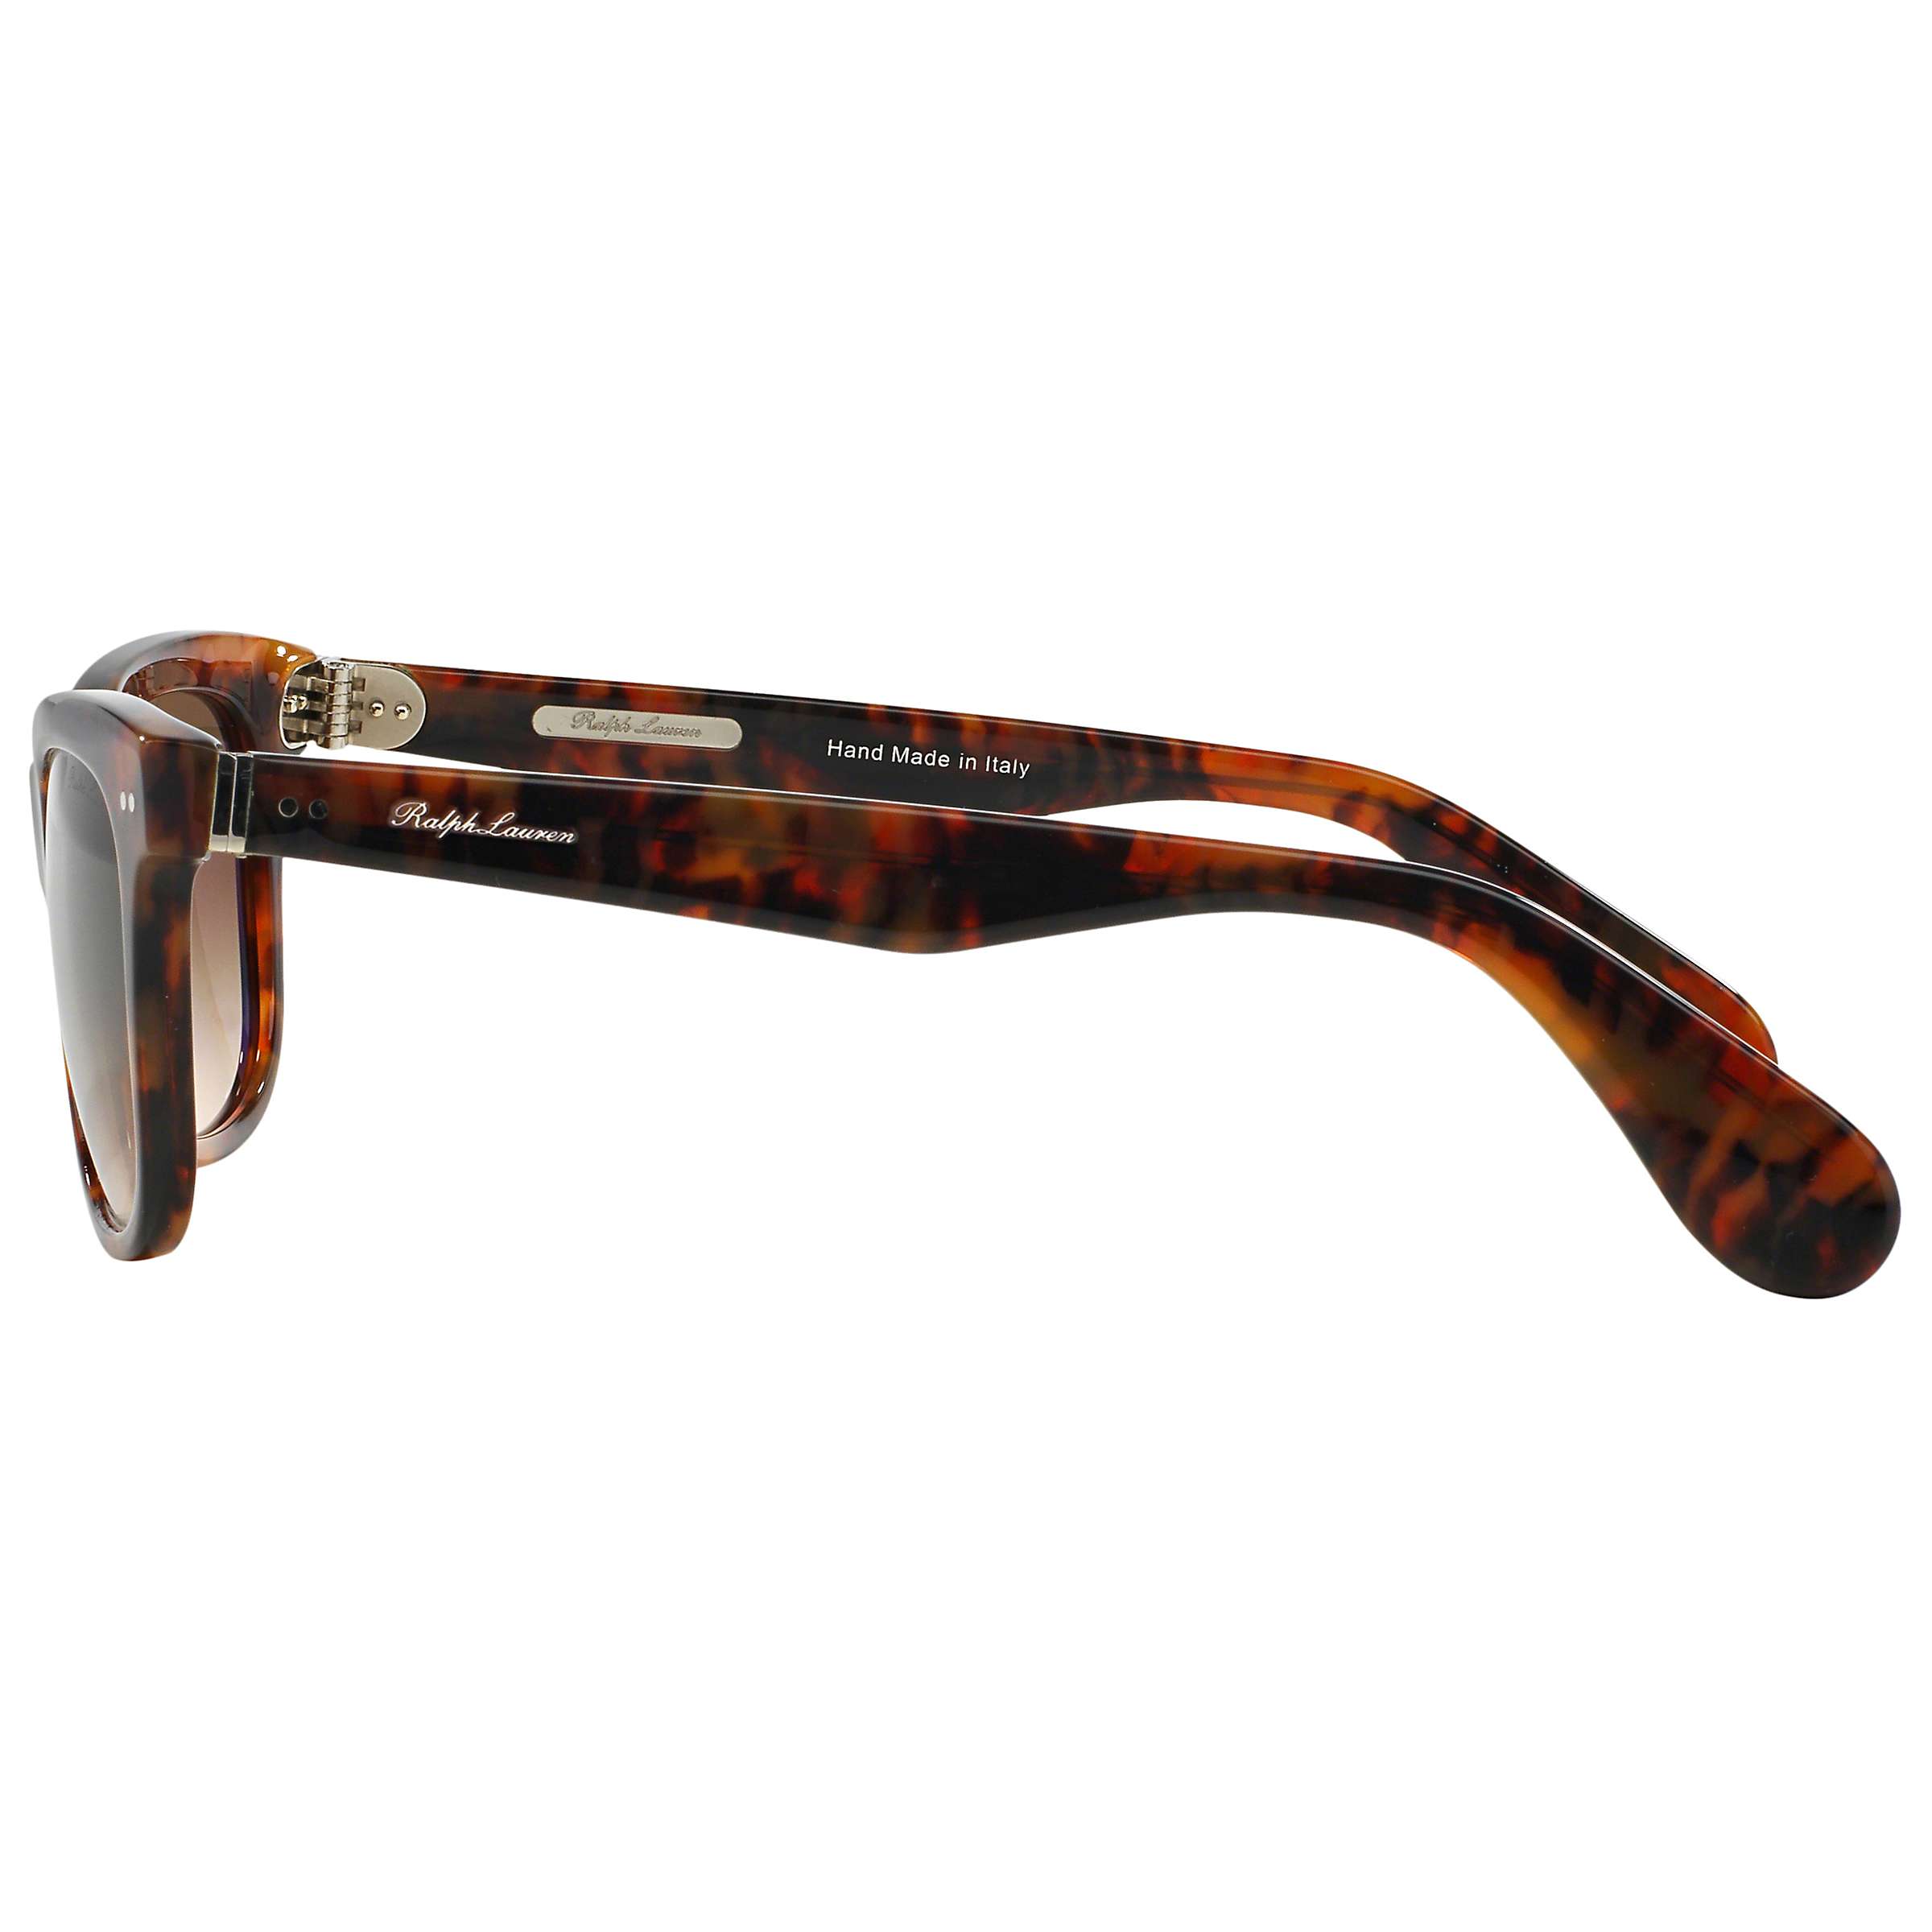 Buy Ralph Lauren RL8119W Sunglasses, Tortoiseshell Online at johnlewis.com